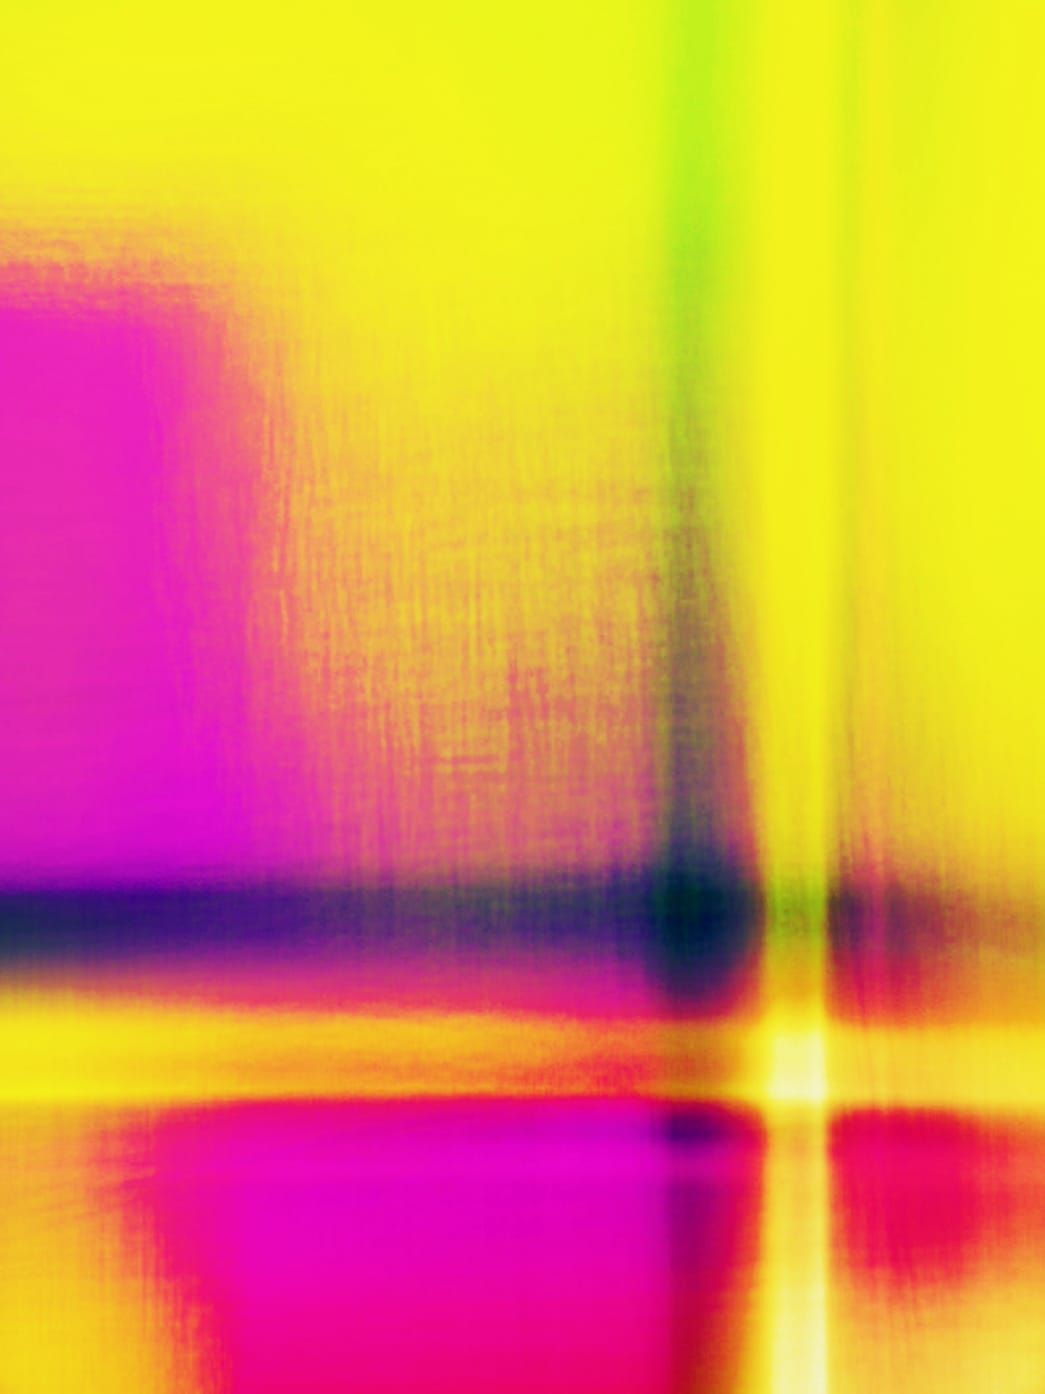 Fotografie, Scanografie von Michael Monney alias acylmx, Abstraktes Bild in Gelb, Pink und Violett 